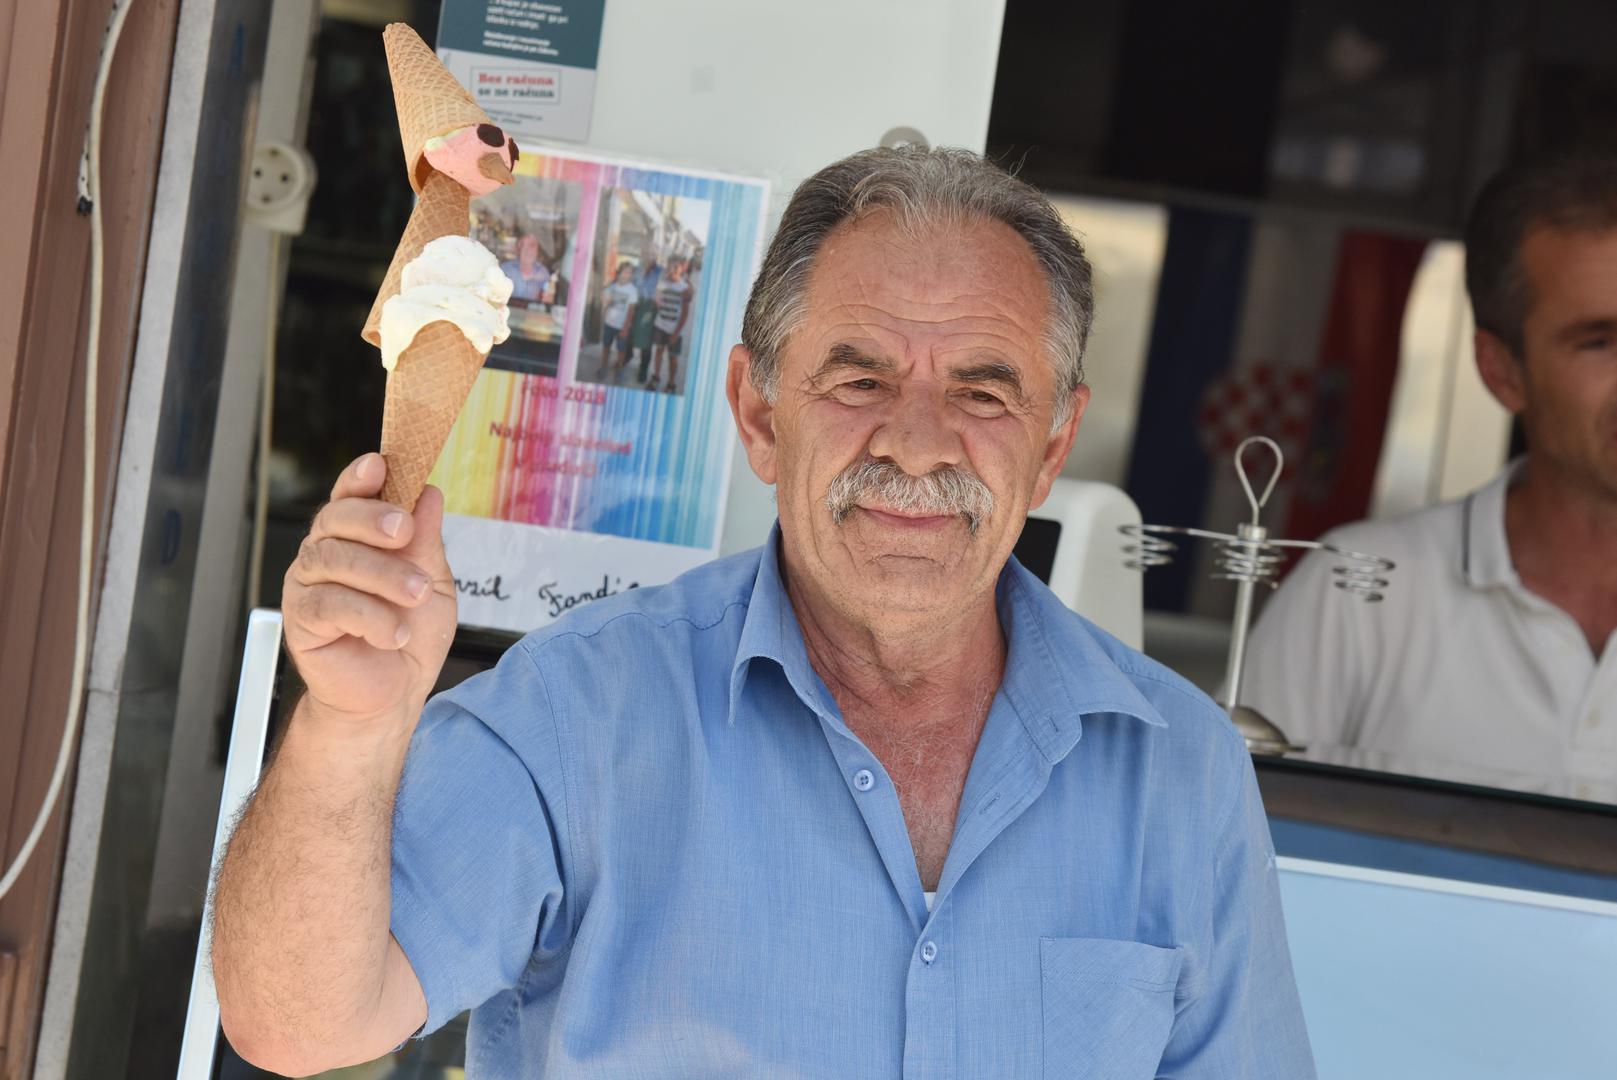 – Stari, ja sam ti sezonac već 50 godina – kaže Makedonac Miki (64) na rivi u Primoštenu